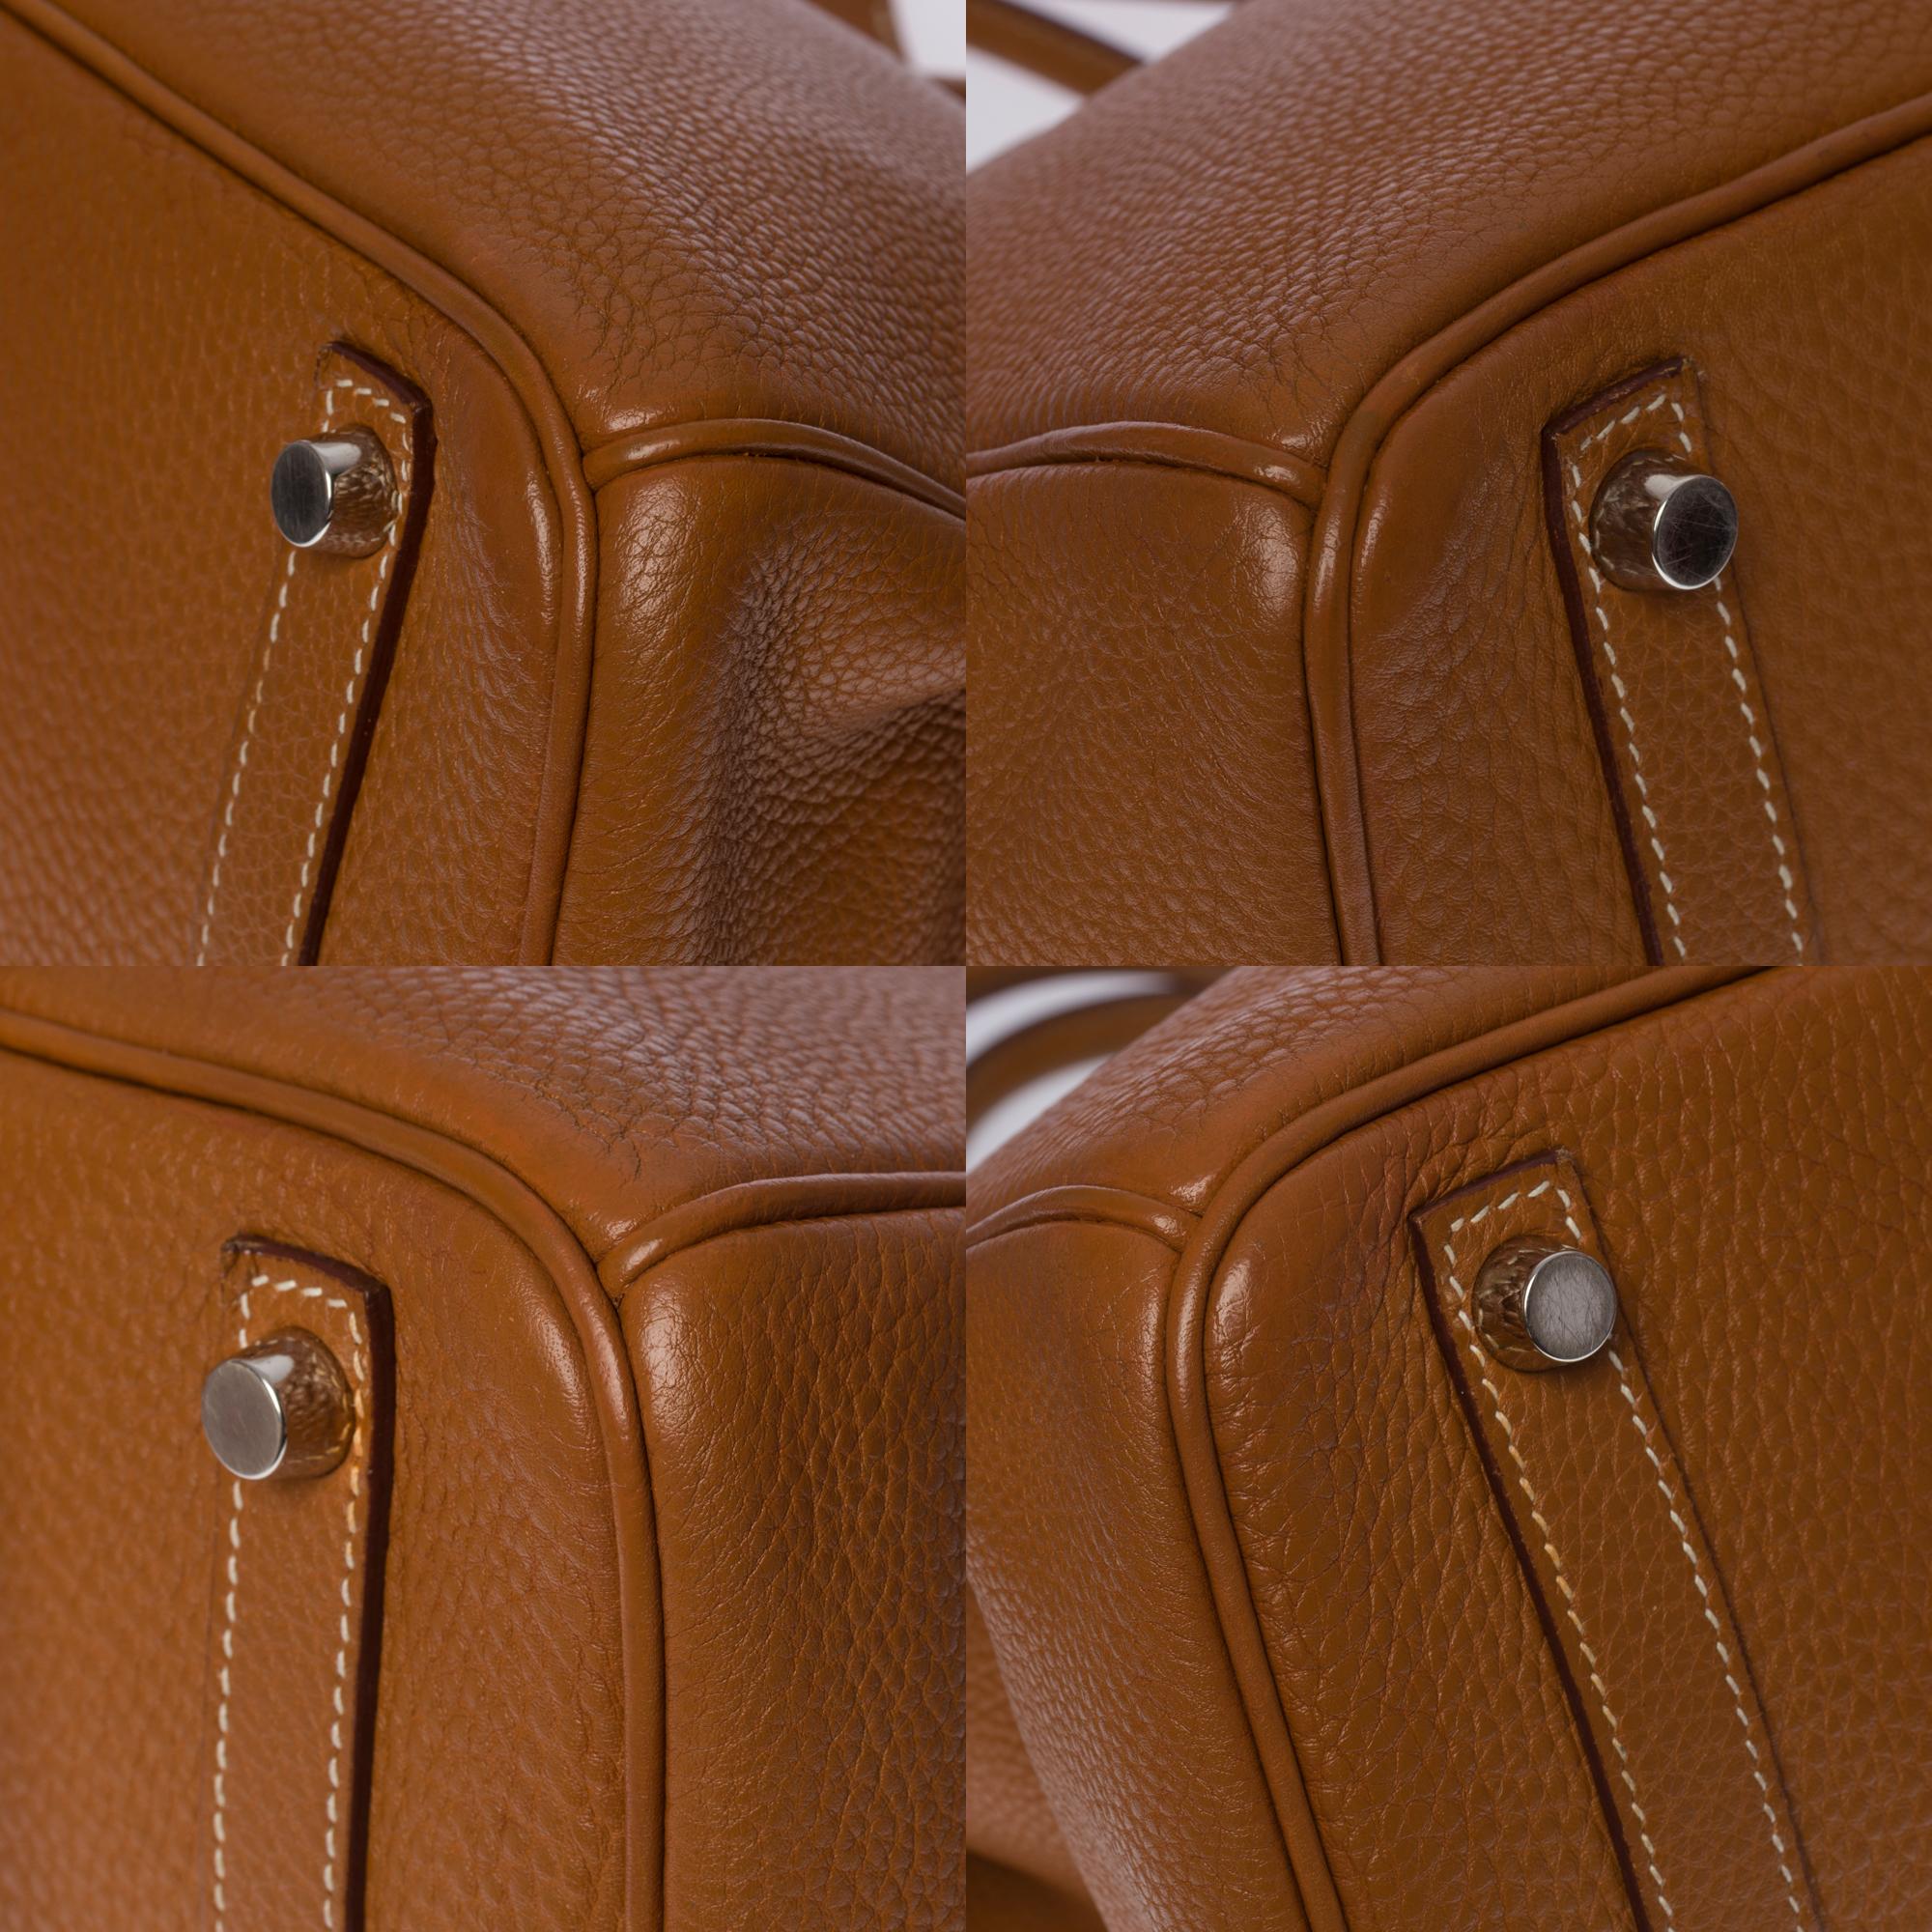 Amazing Hermès Birkin 30 handbag in Togo Gold leather, SHW 3